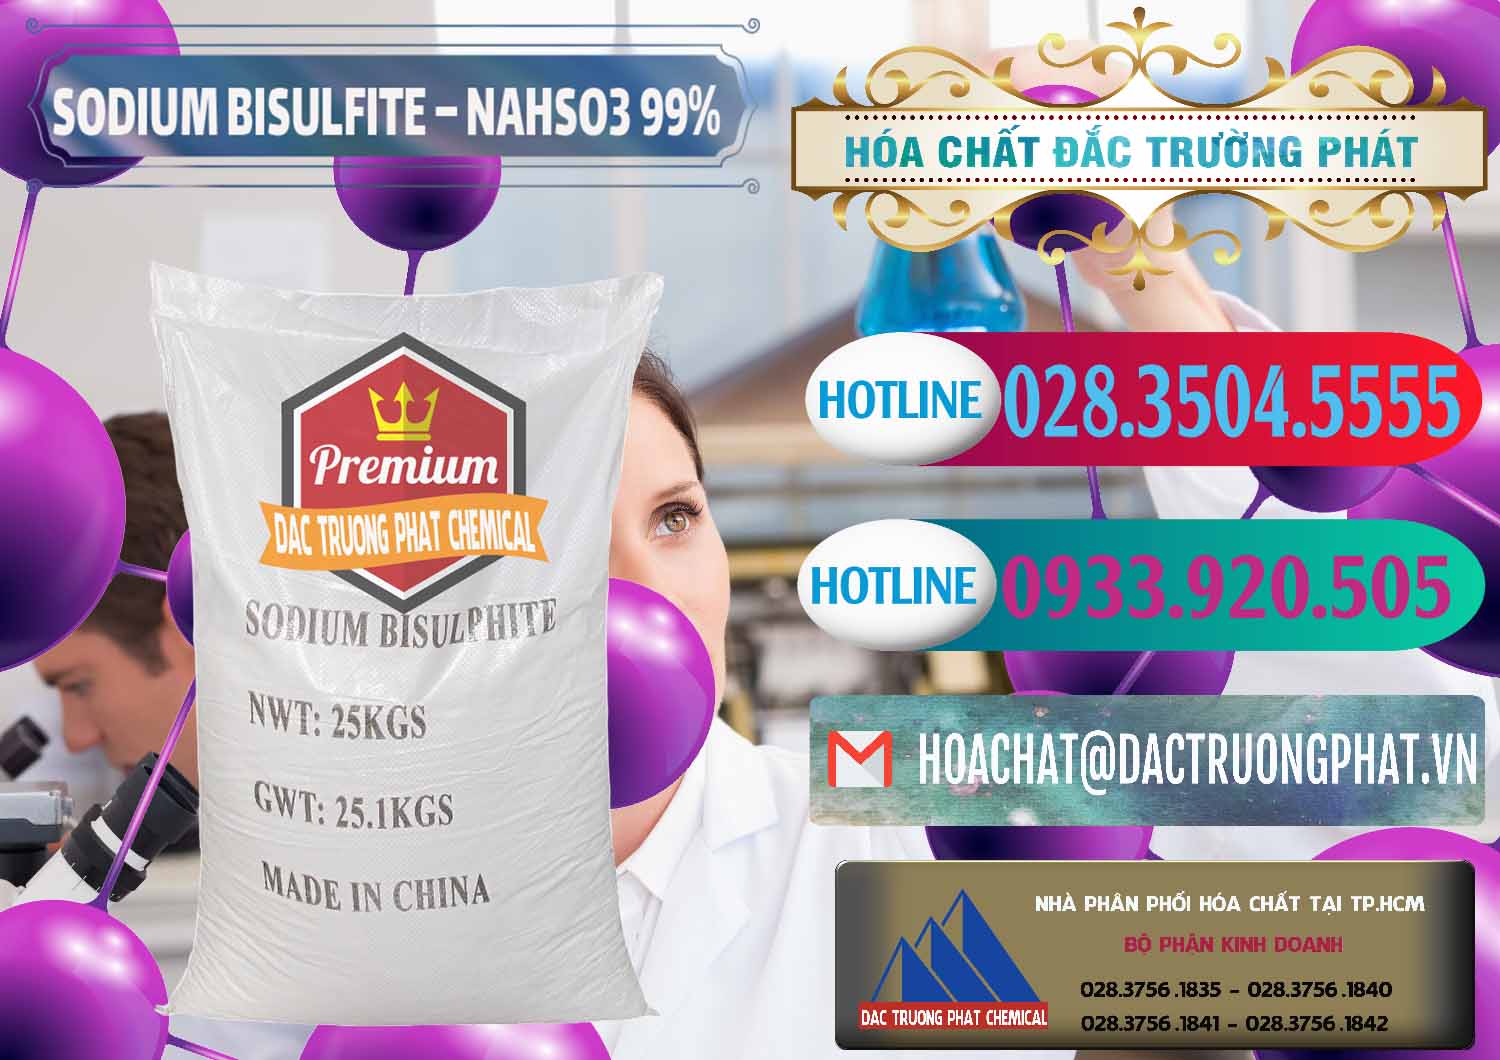 Cty kinh doanh ( bán ) Sodium Bisulfite – NAHSO3 Trung Quốc China - 0140 - Công ty bán và cung cấp hóa chất tại TP.HCM - truongphat.vn